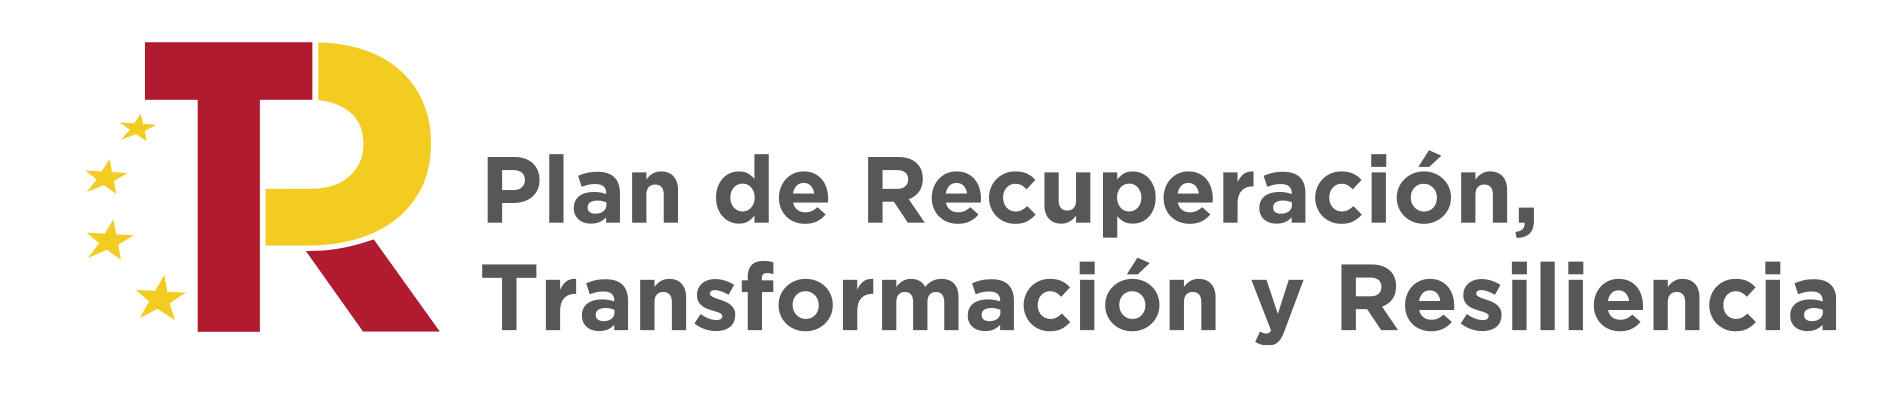 Logotipo "Plan de recuperación, transformación y resiliencia"